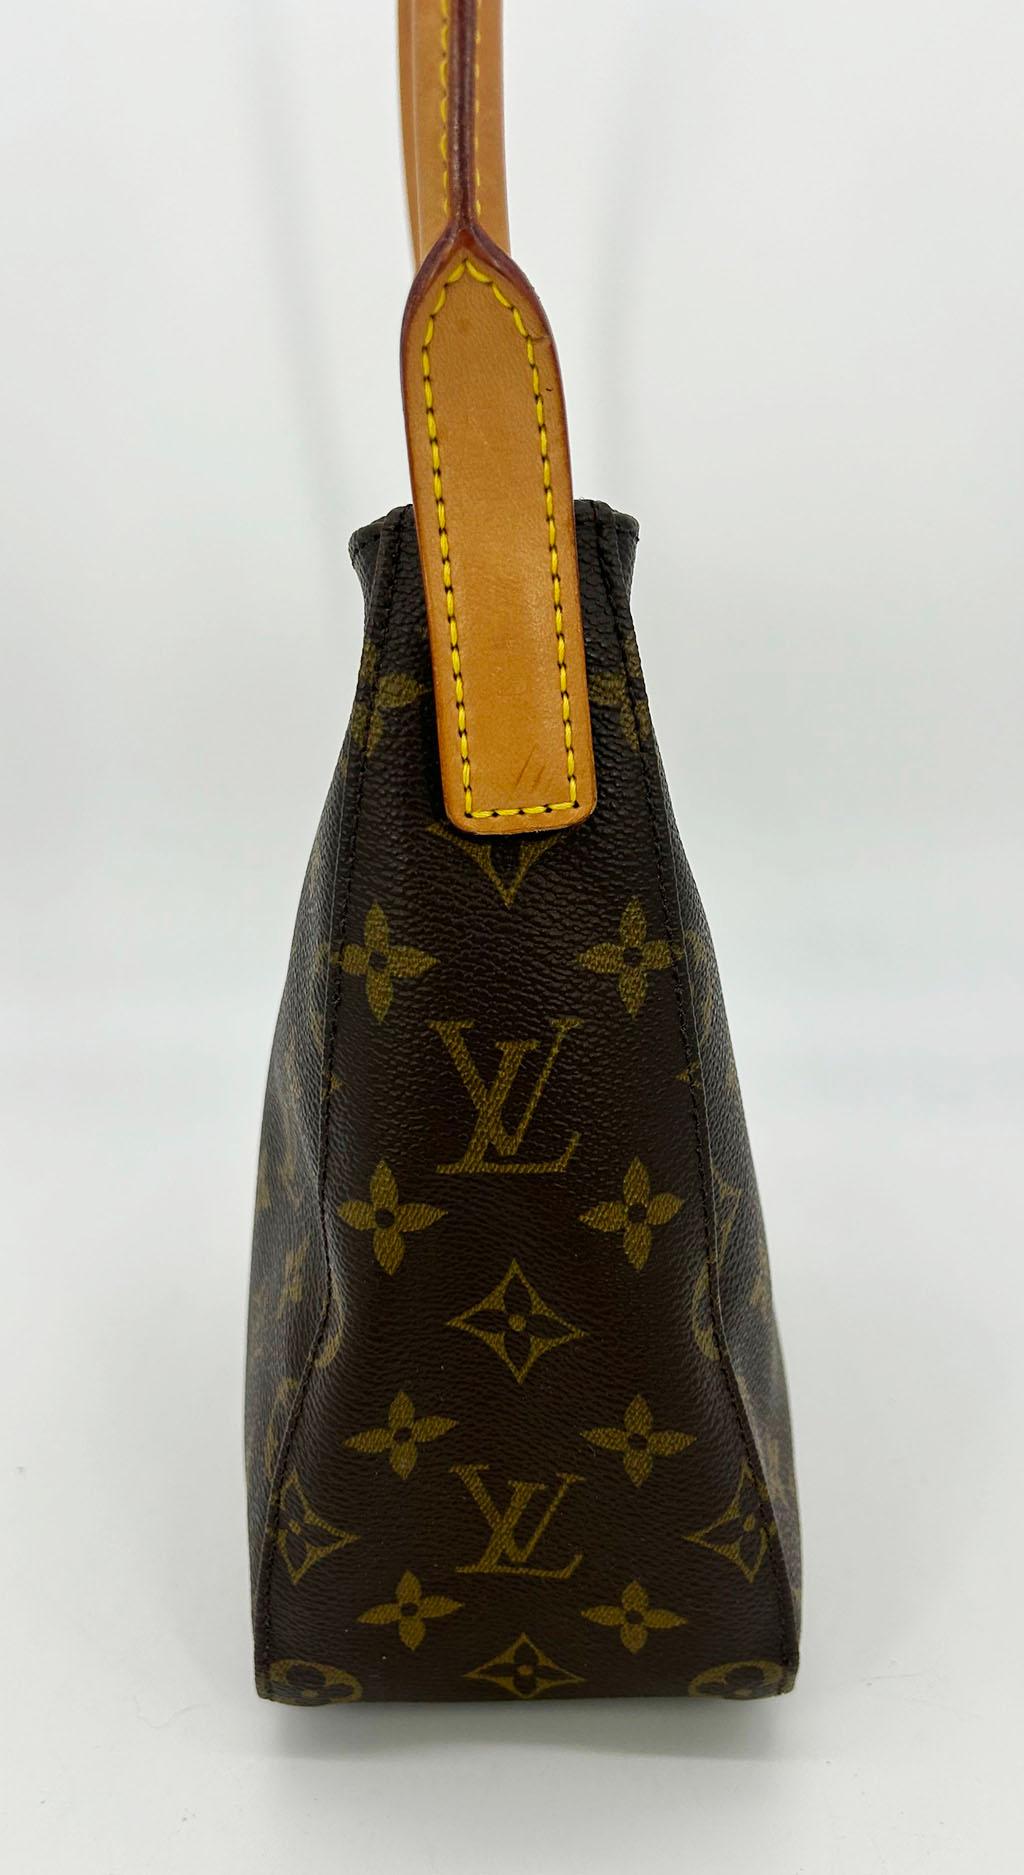 MM en toile Monogram de Louis Vuitton Looping en très bon état. Corps en toile monogramme marron avec poignée supérieure en cuir fauve et accessoires dorés. La poignée peut se plier et se rabattre pour porter ou transporter cette pièce de